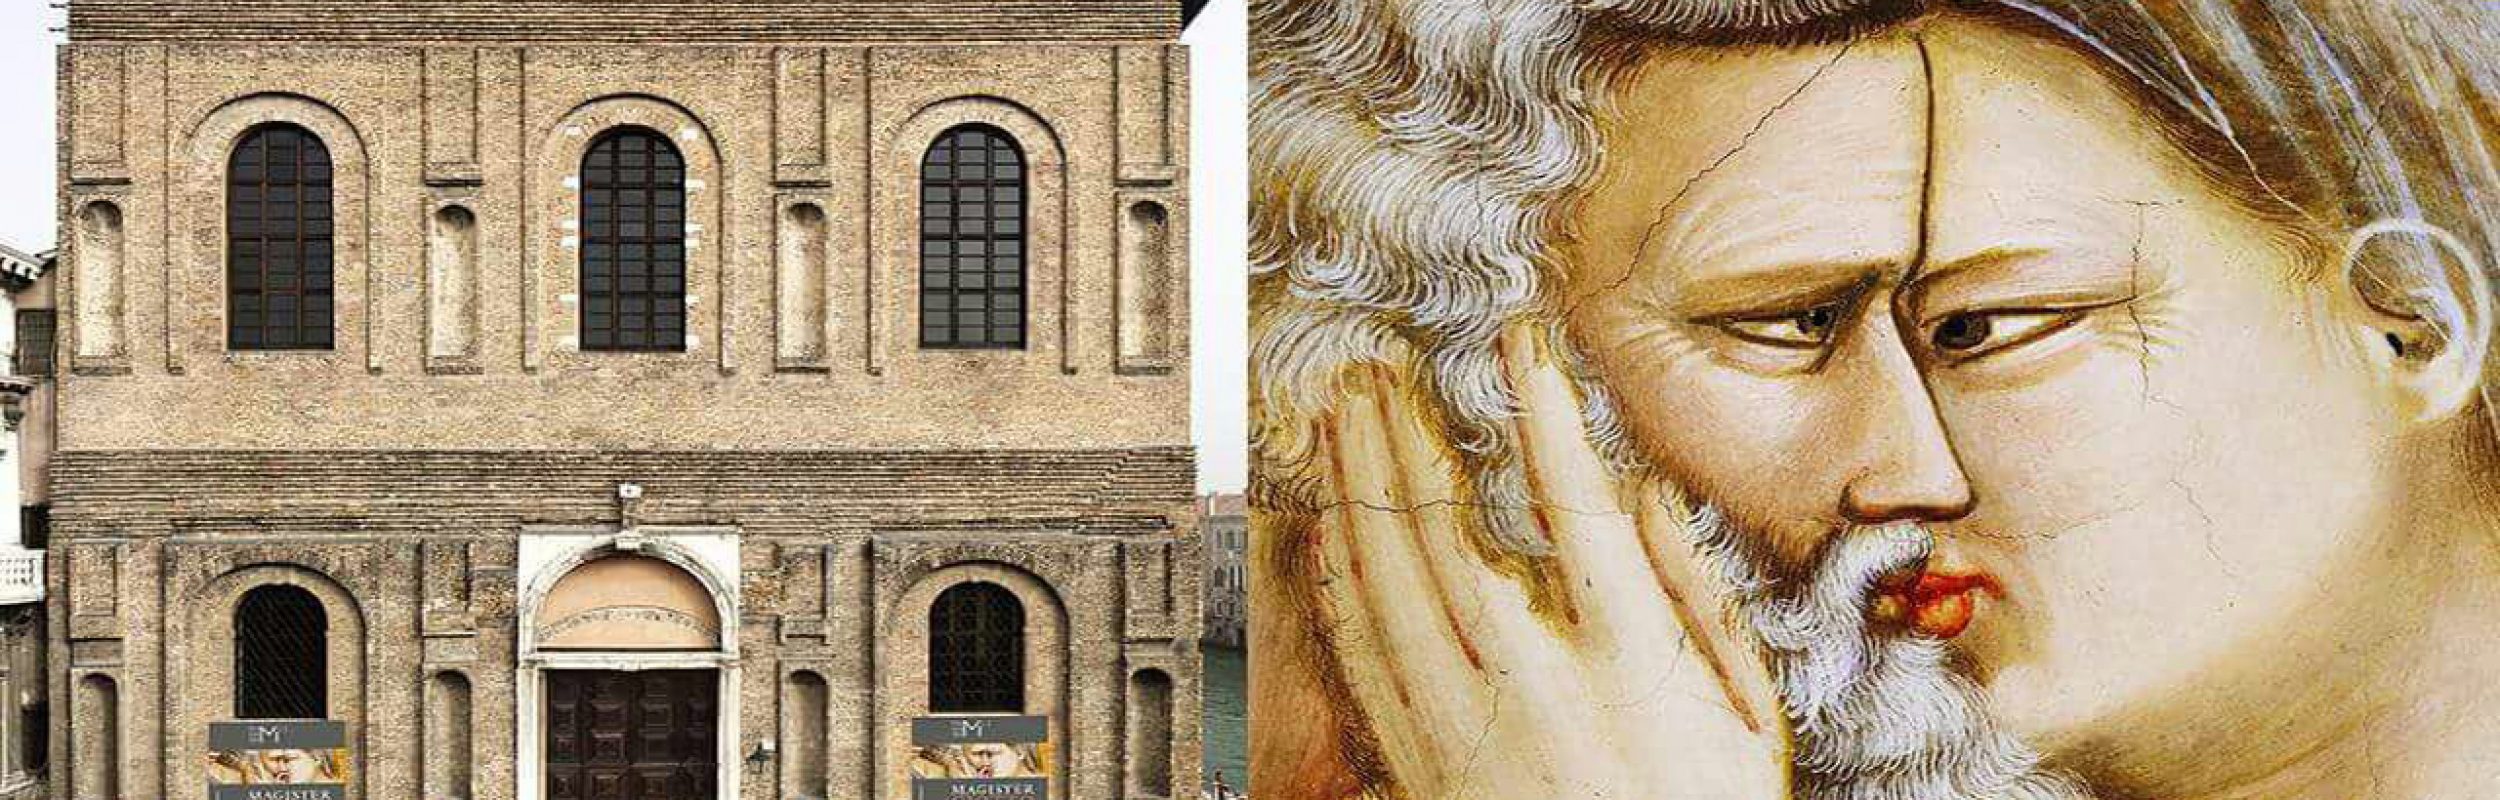 Magister Giotto a Venezia, imperdibile!